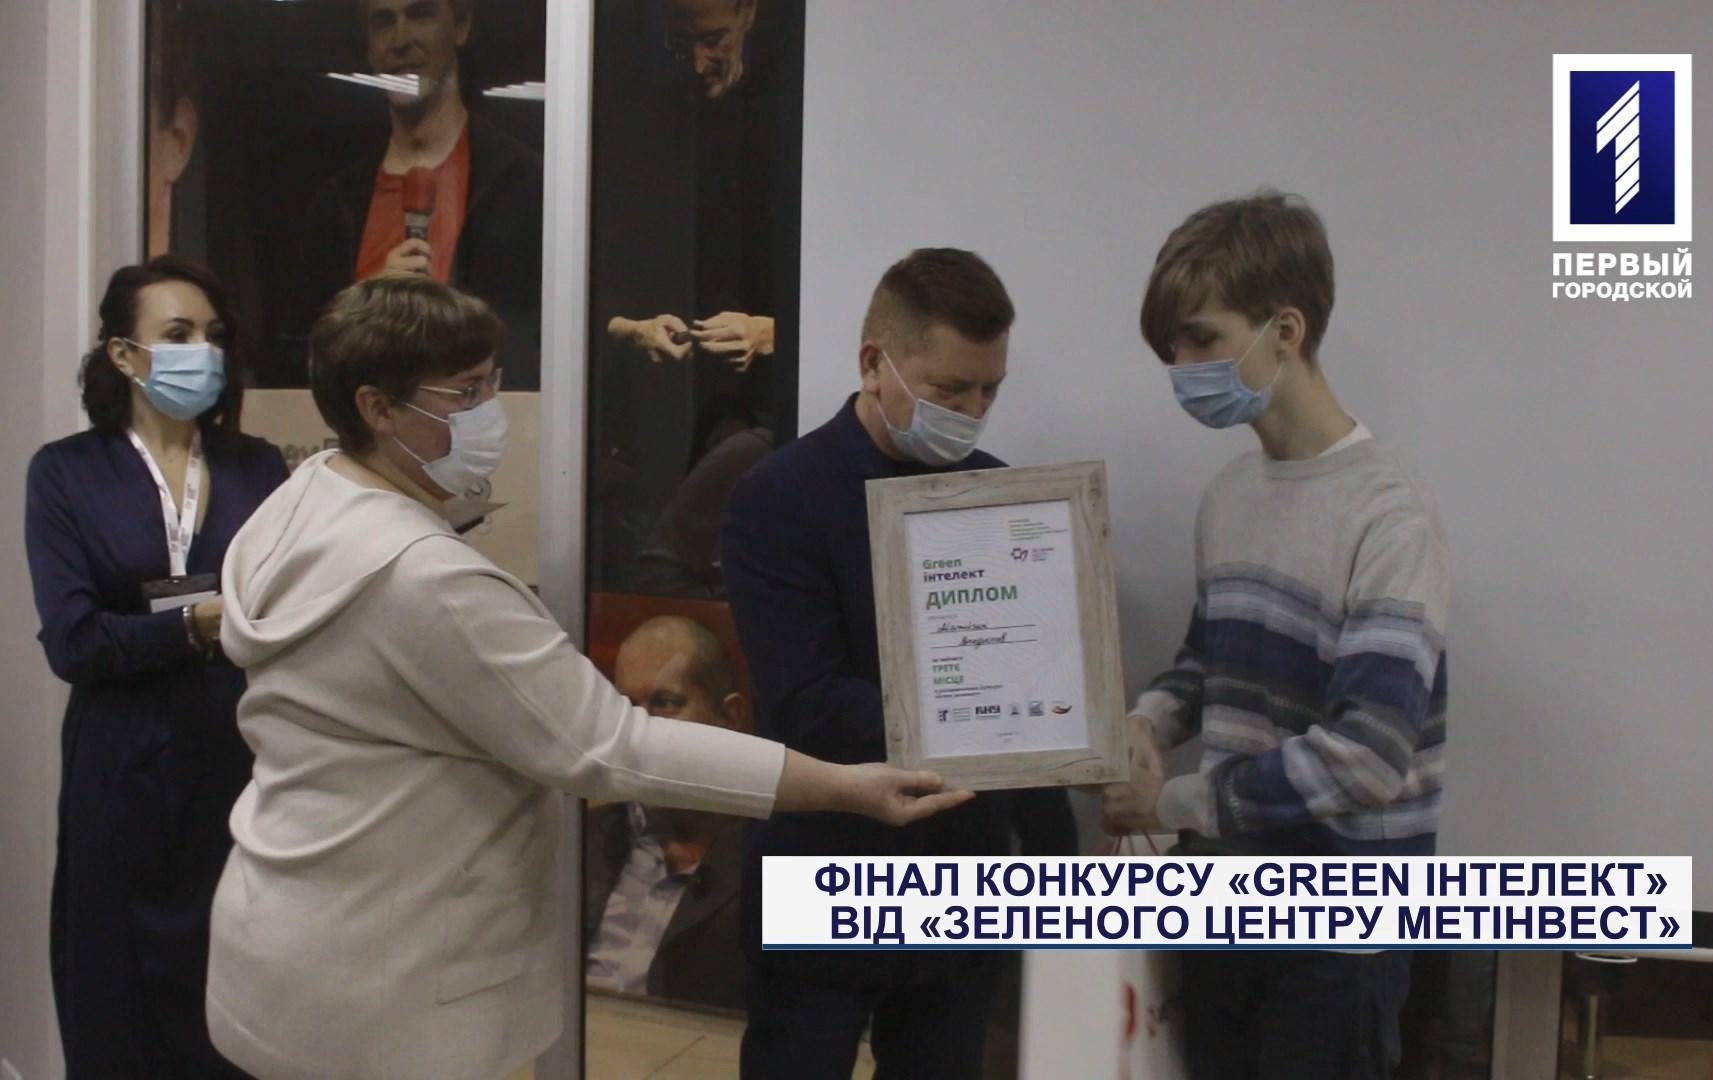 Спецрепортаж: фінал конкурсу «Green Інтелект» від «Зеленого центру Метінвест»